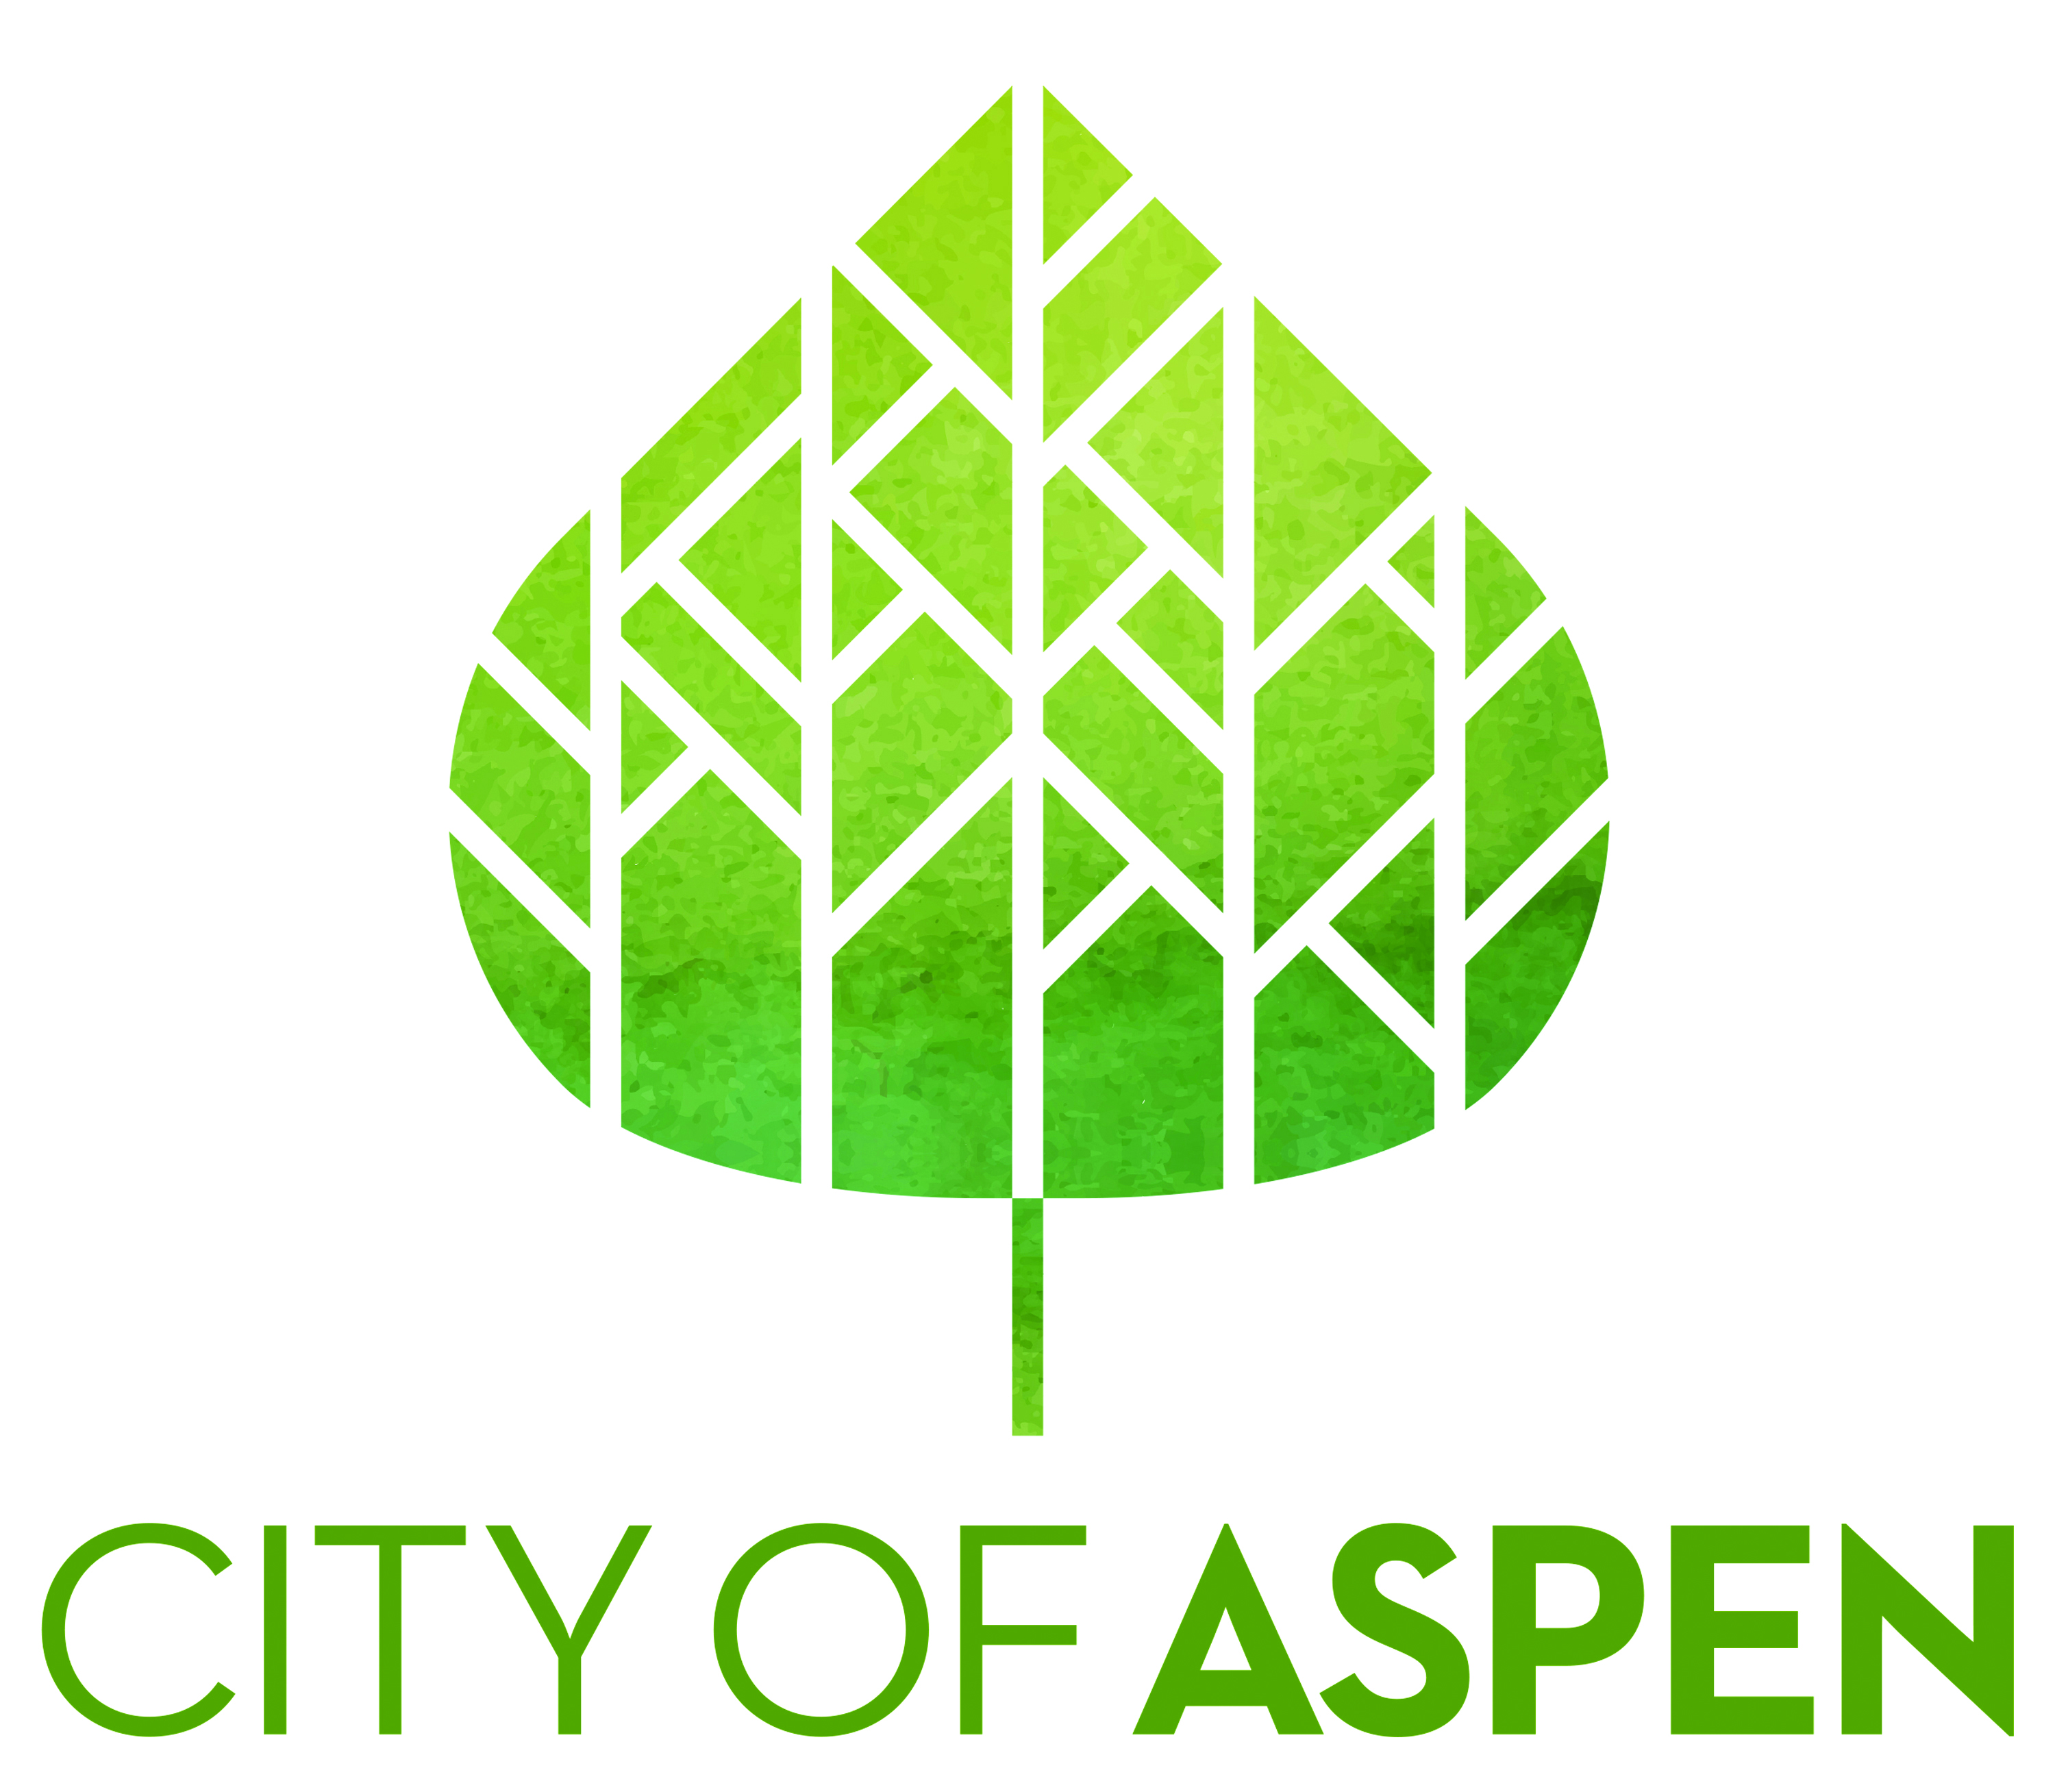 Organization logo of City of Aspen